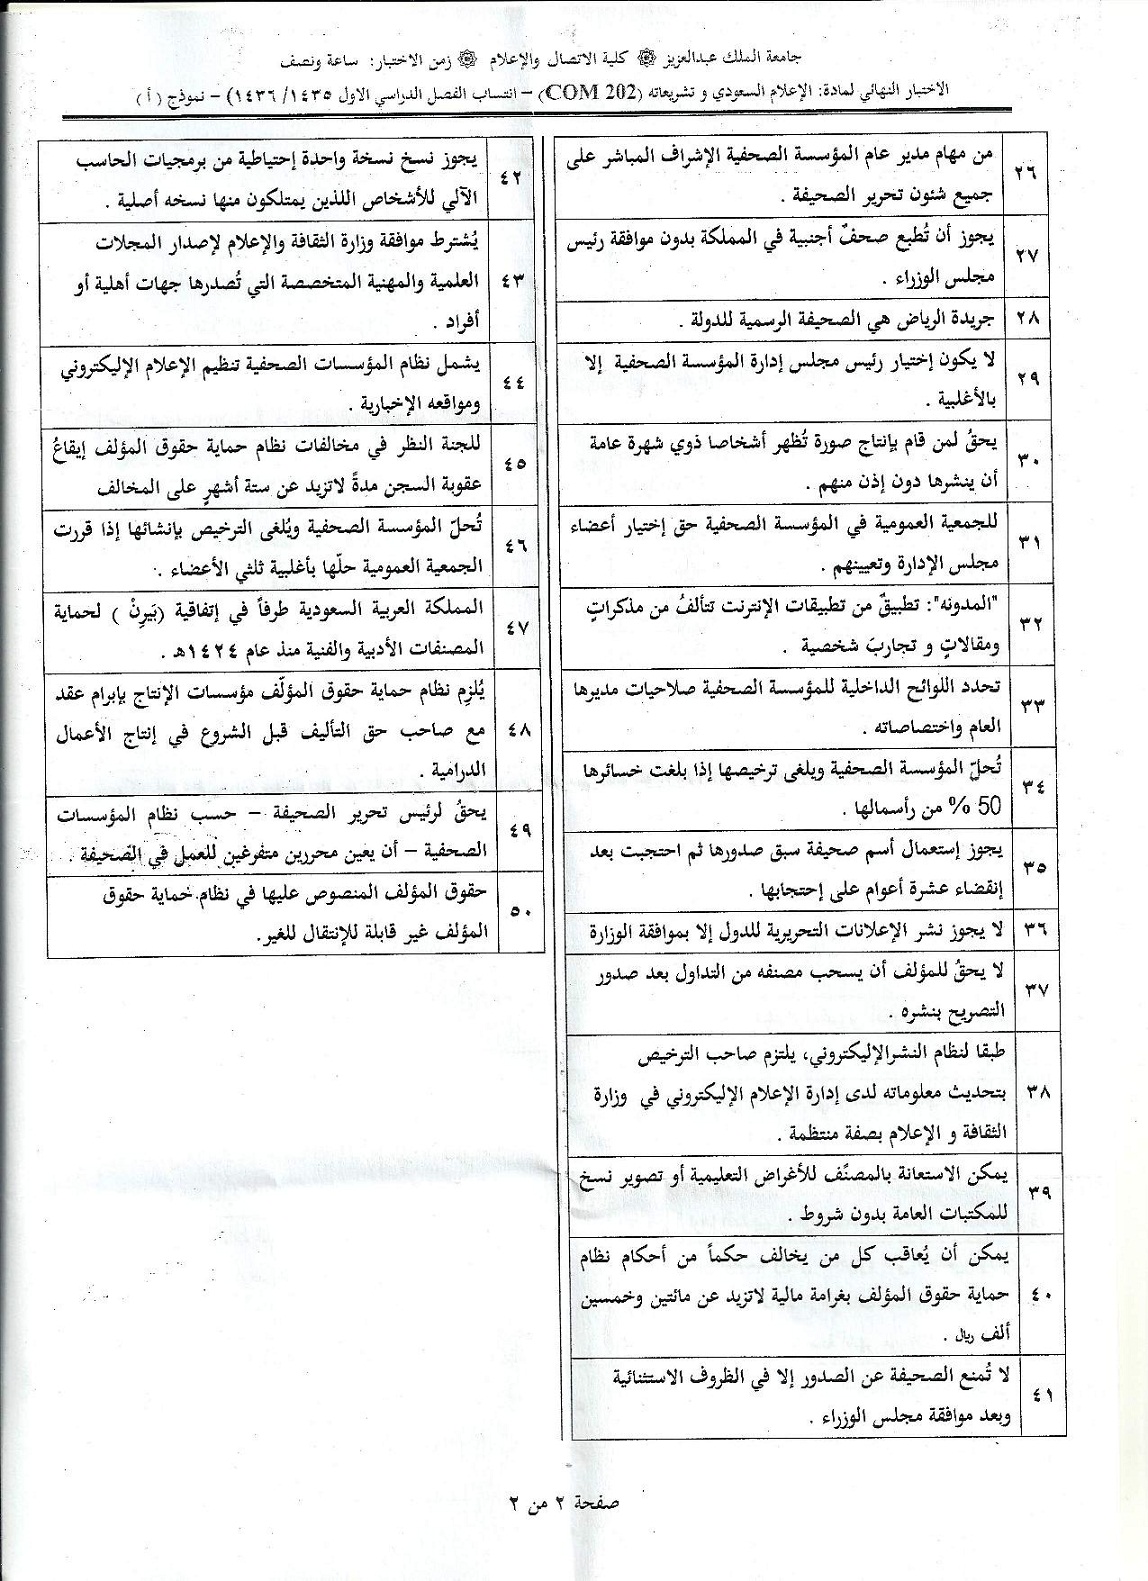 اسئلة اختبار الإعلام السعودي وتشريعاته com 202 انتساب الفصل الدراسي الأول 1436هـ نموذج (أ)